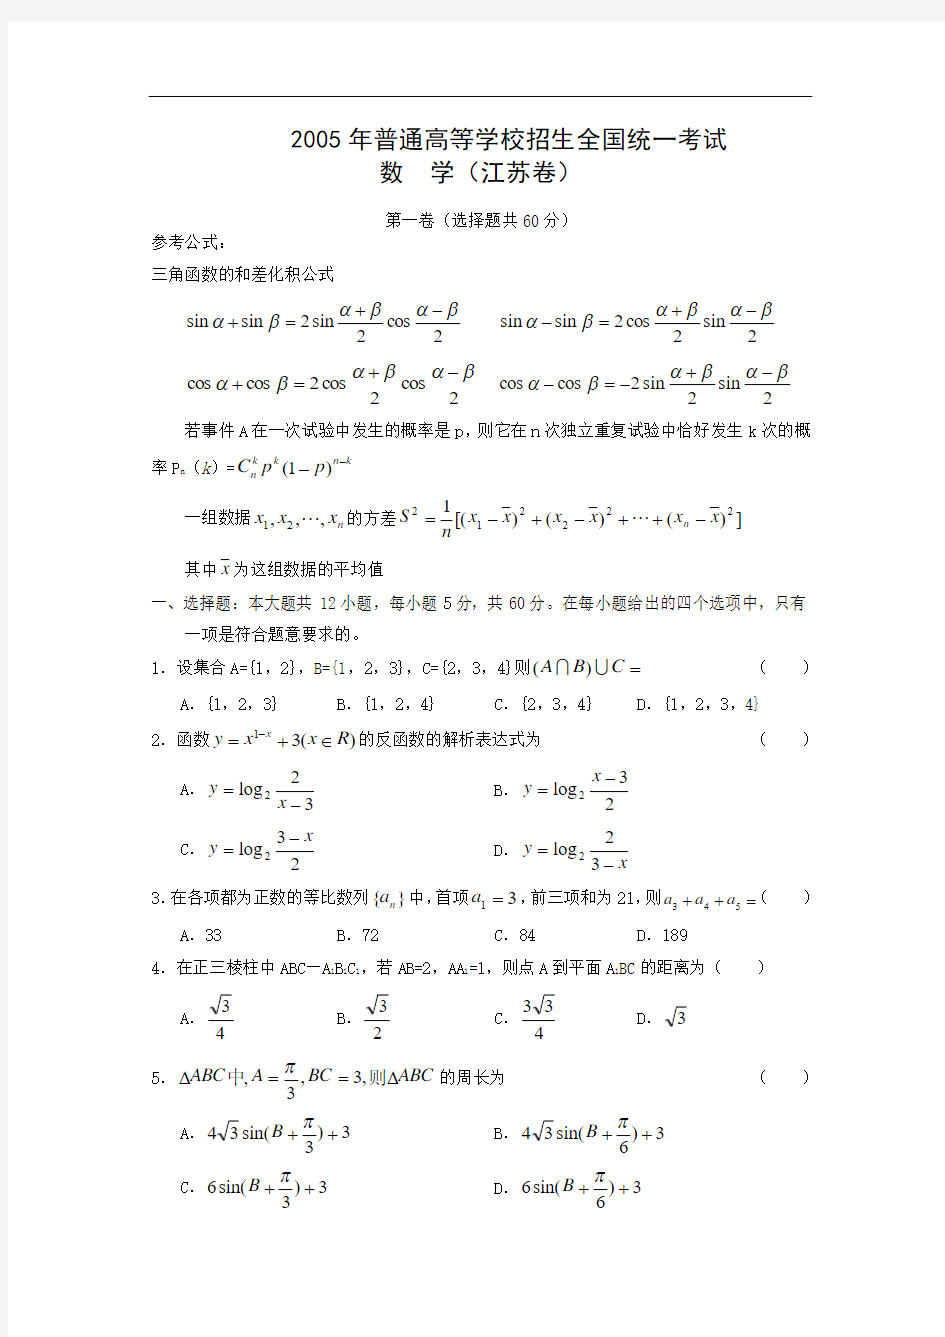 2005年高考试题——数学( 江 苏卷)